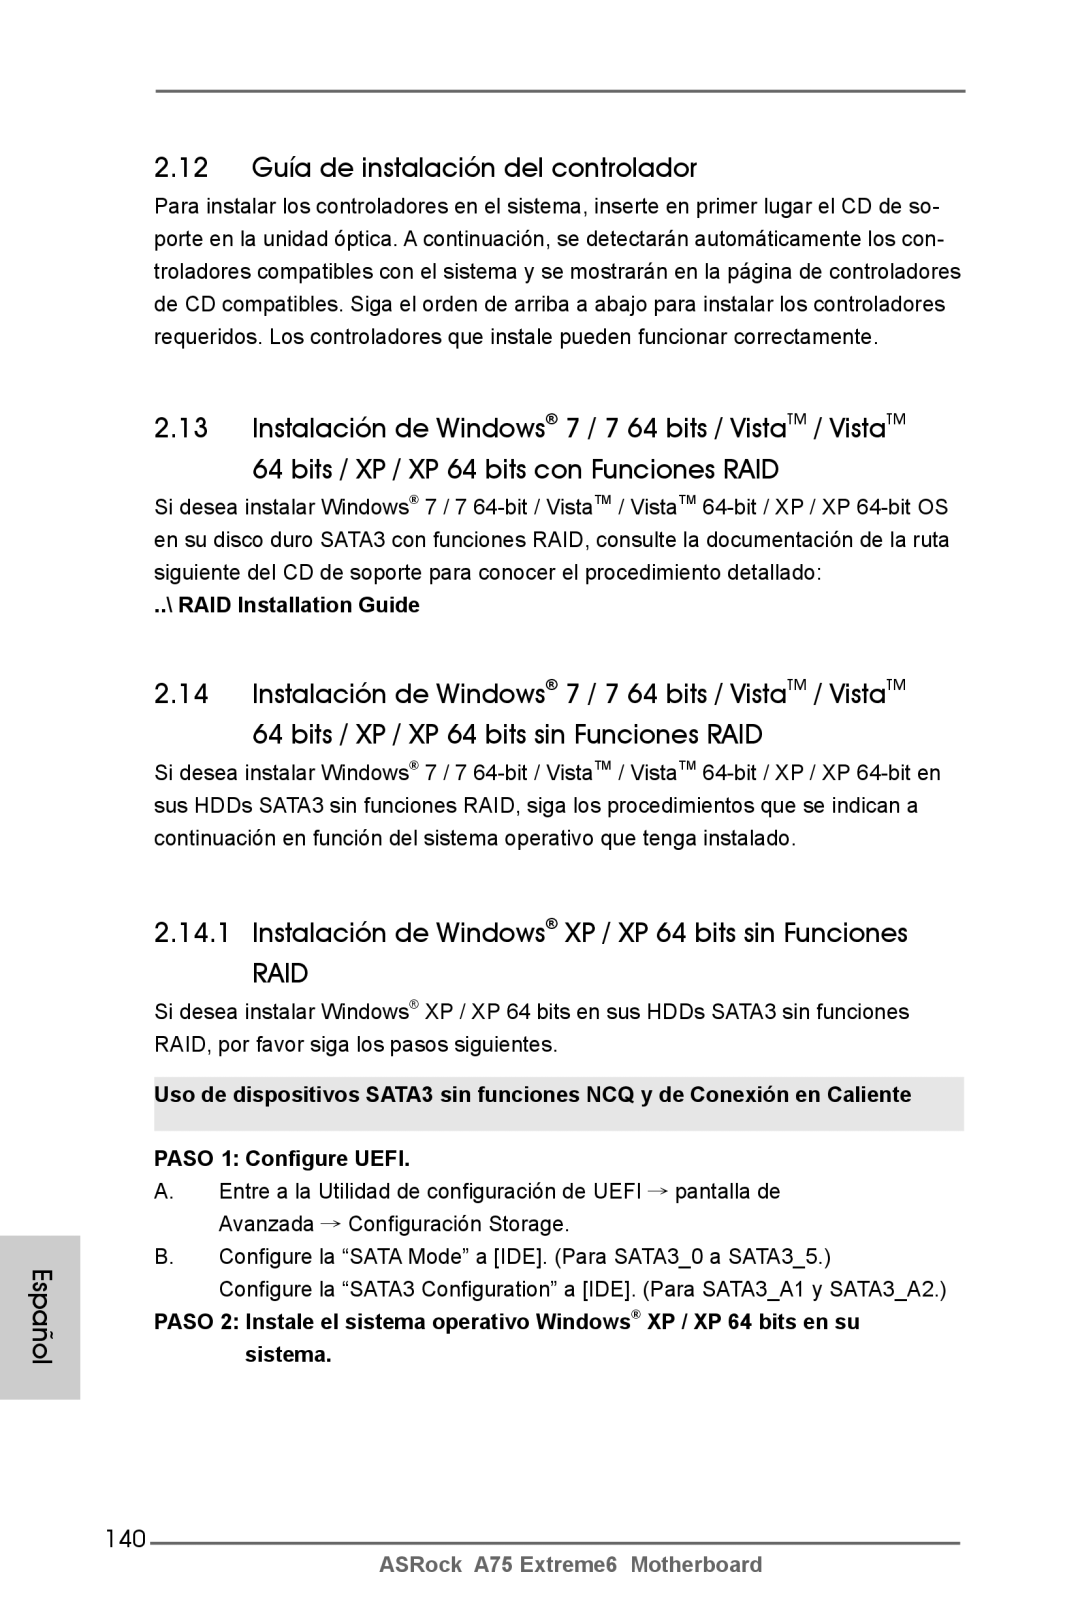 ASRock A75 Extreme6 Español 12 Guía de instalación del controlador, Instalación de Windows XP / XP 64 bits sin Funciones 